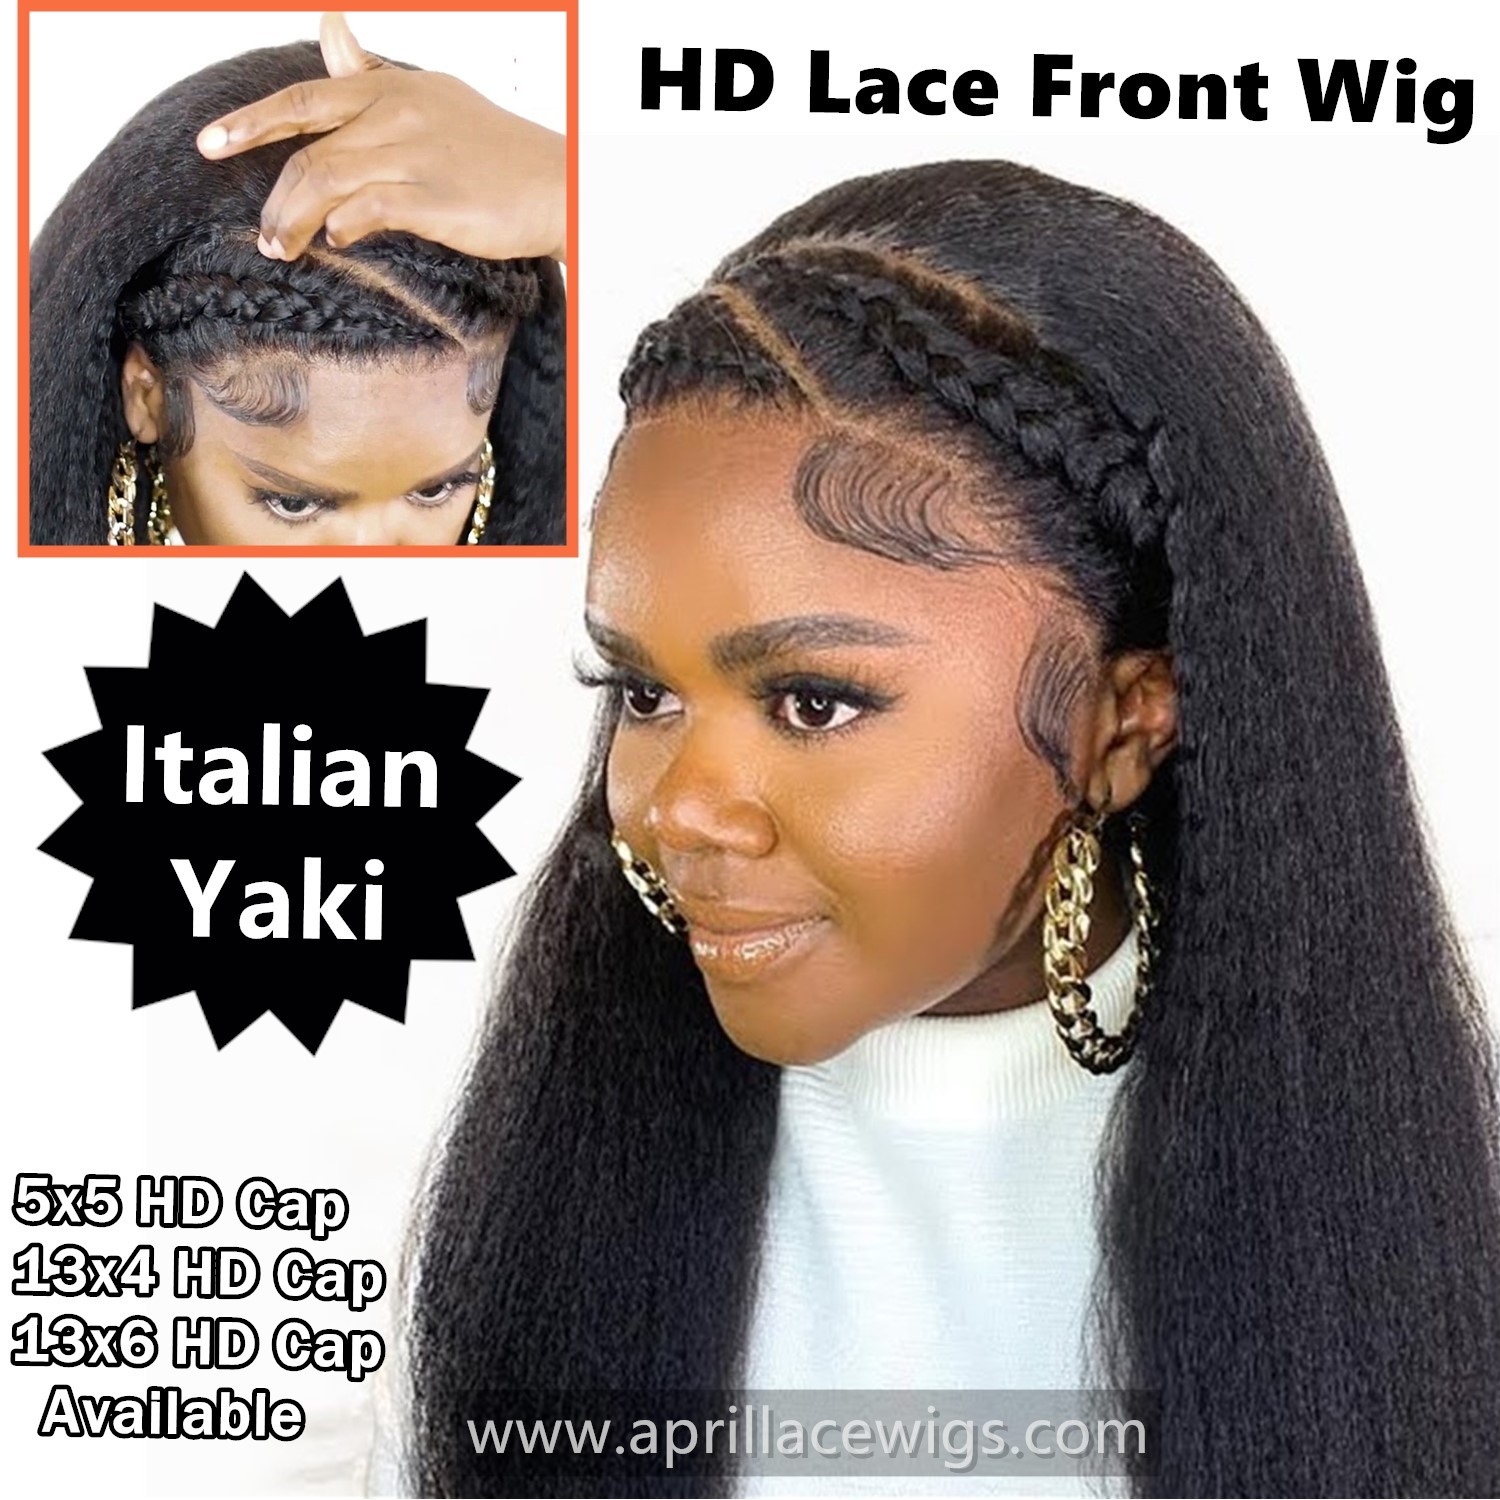 italian yaki 13x4 HD lace front wig black women